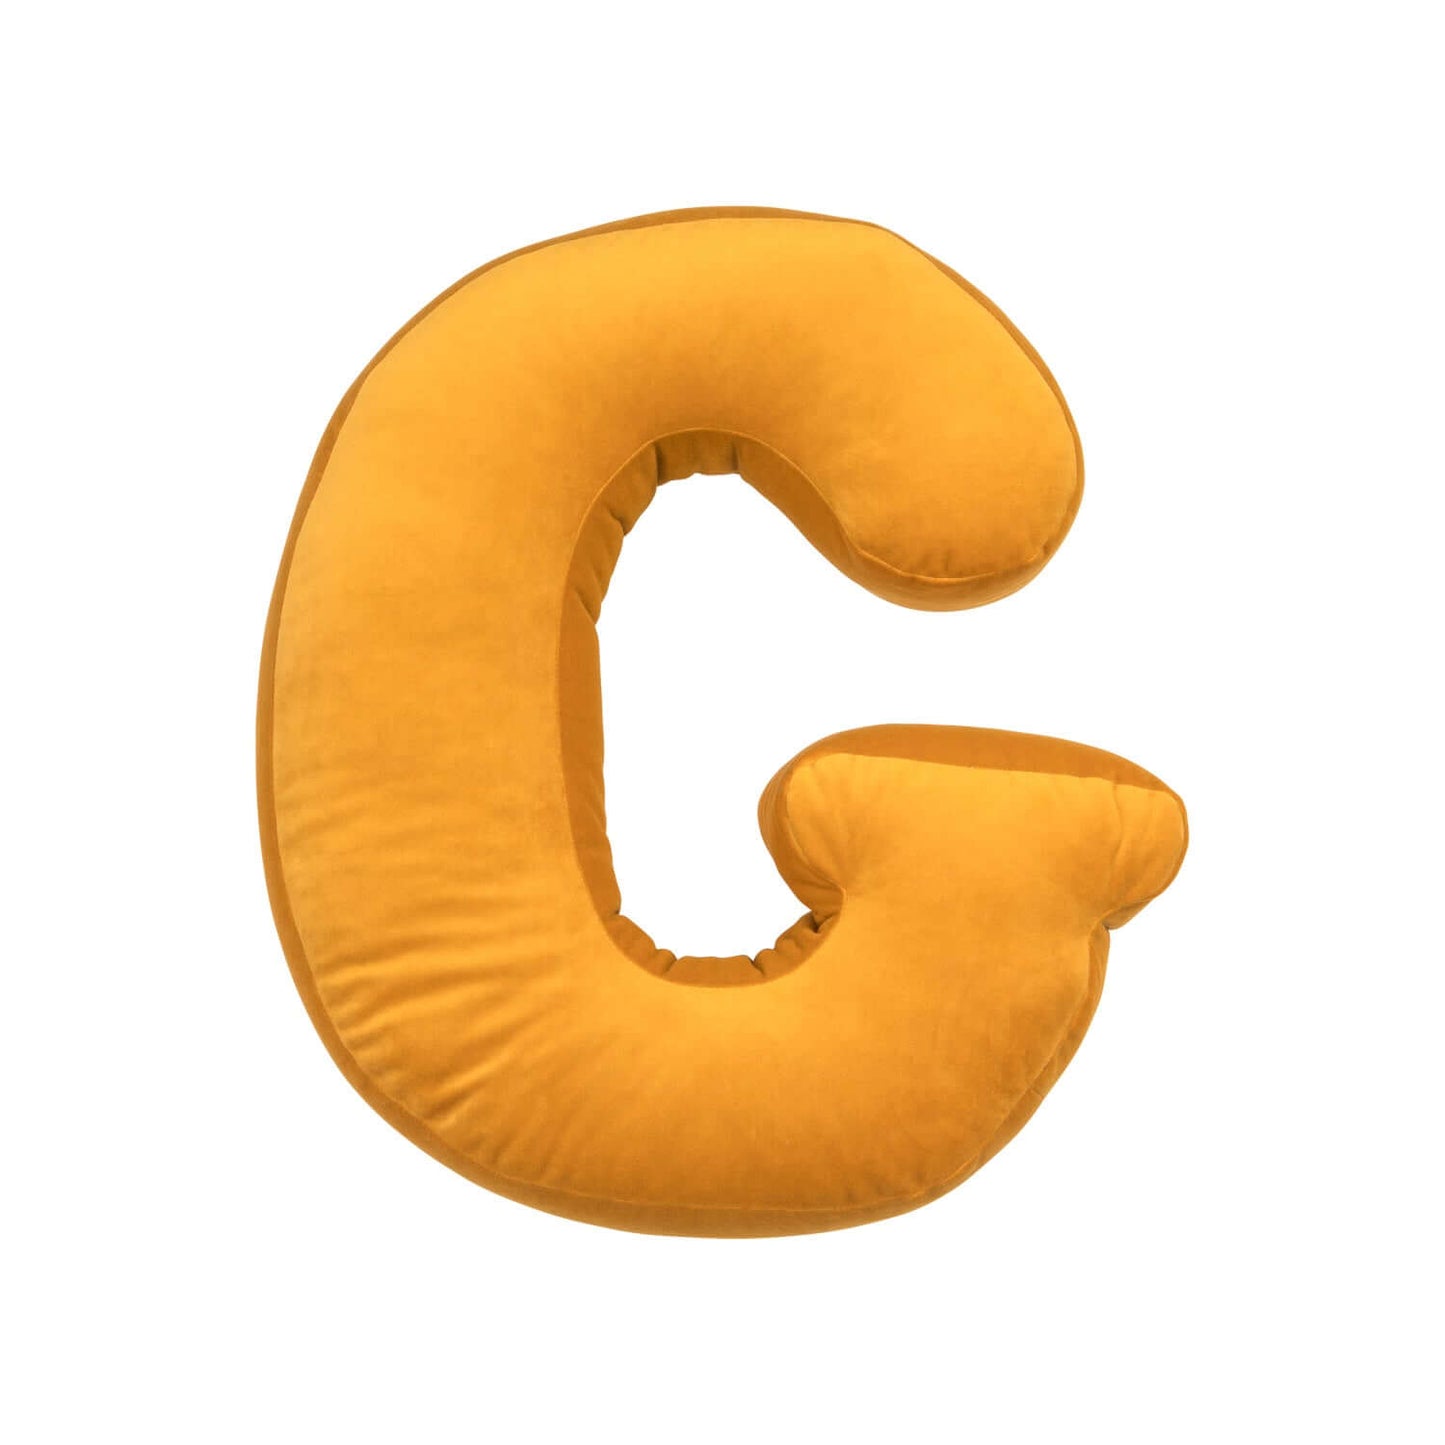 velvet letter cushion g yellow by Bettys home 